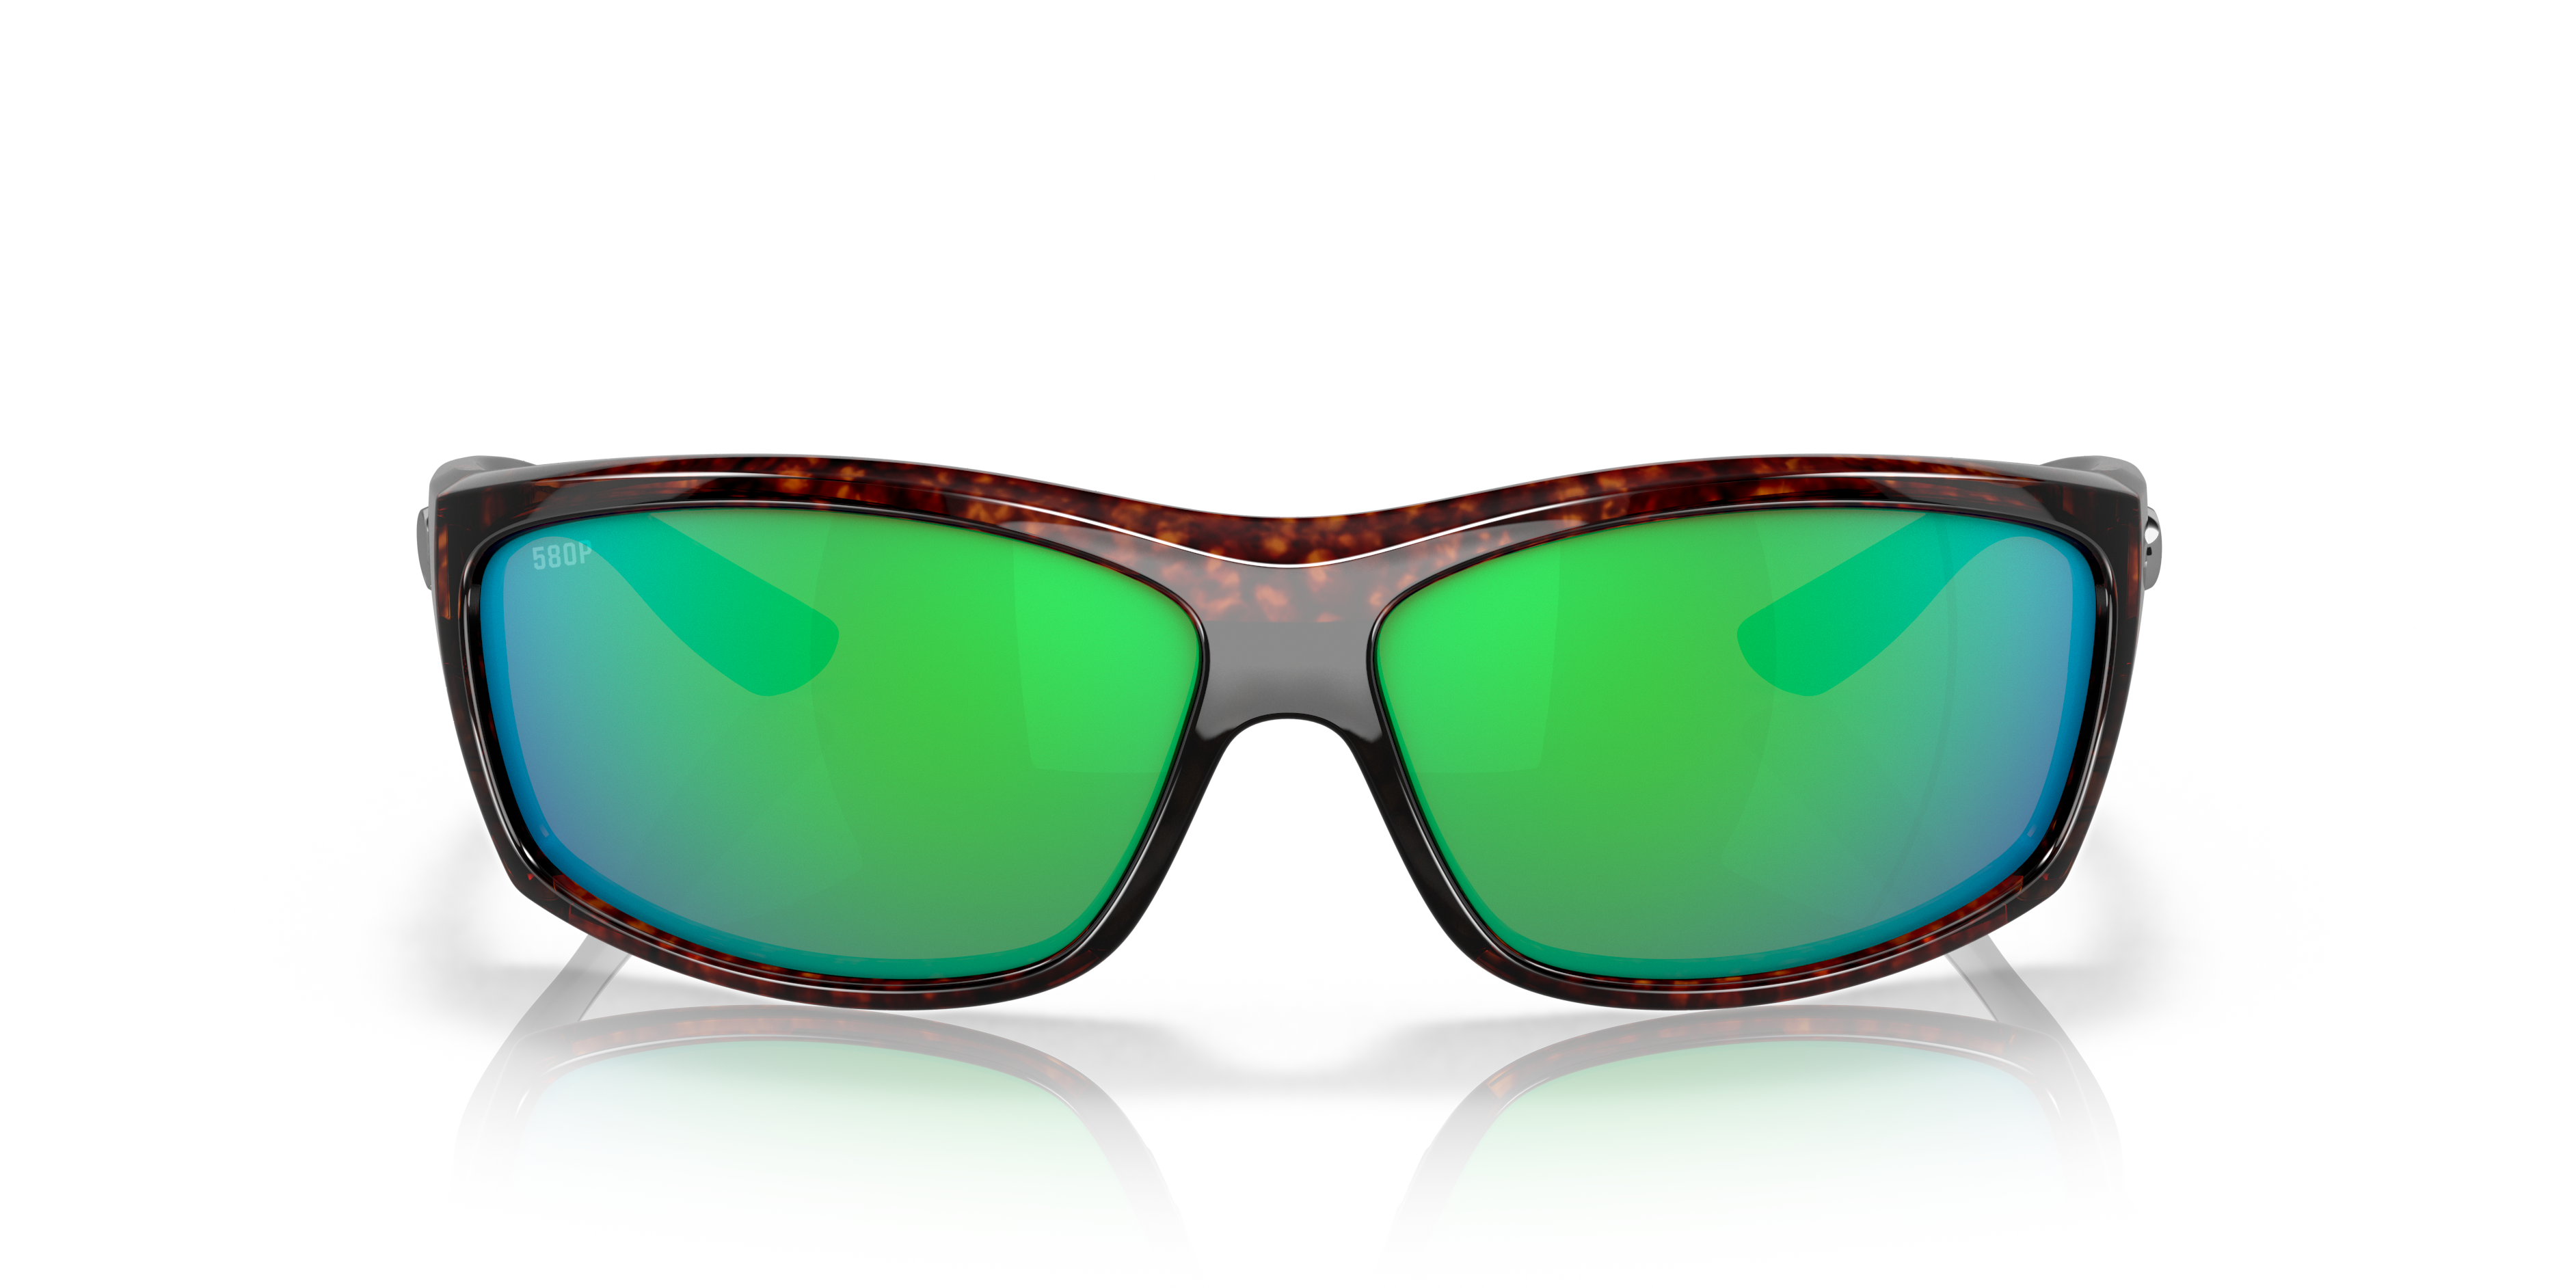 (取寄) コスタデルマール ソルトブレイク ポーラライズド サングラス Costa Del Mar Costa Del Mar Saltbreak Polarized Sunglasses Wetlands Green Mirror 580P